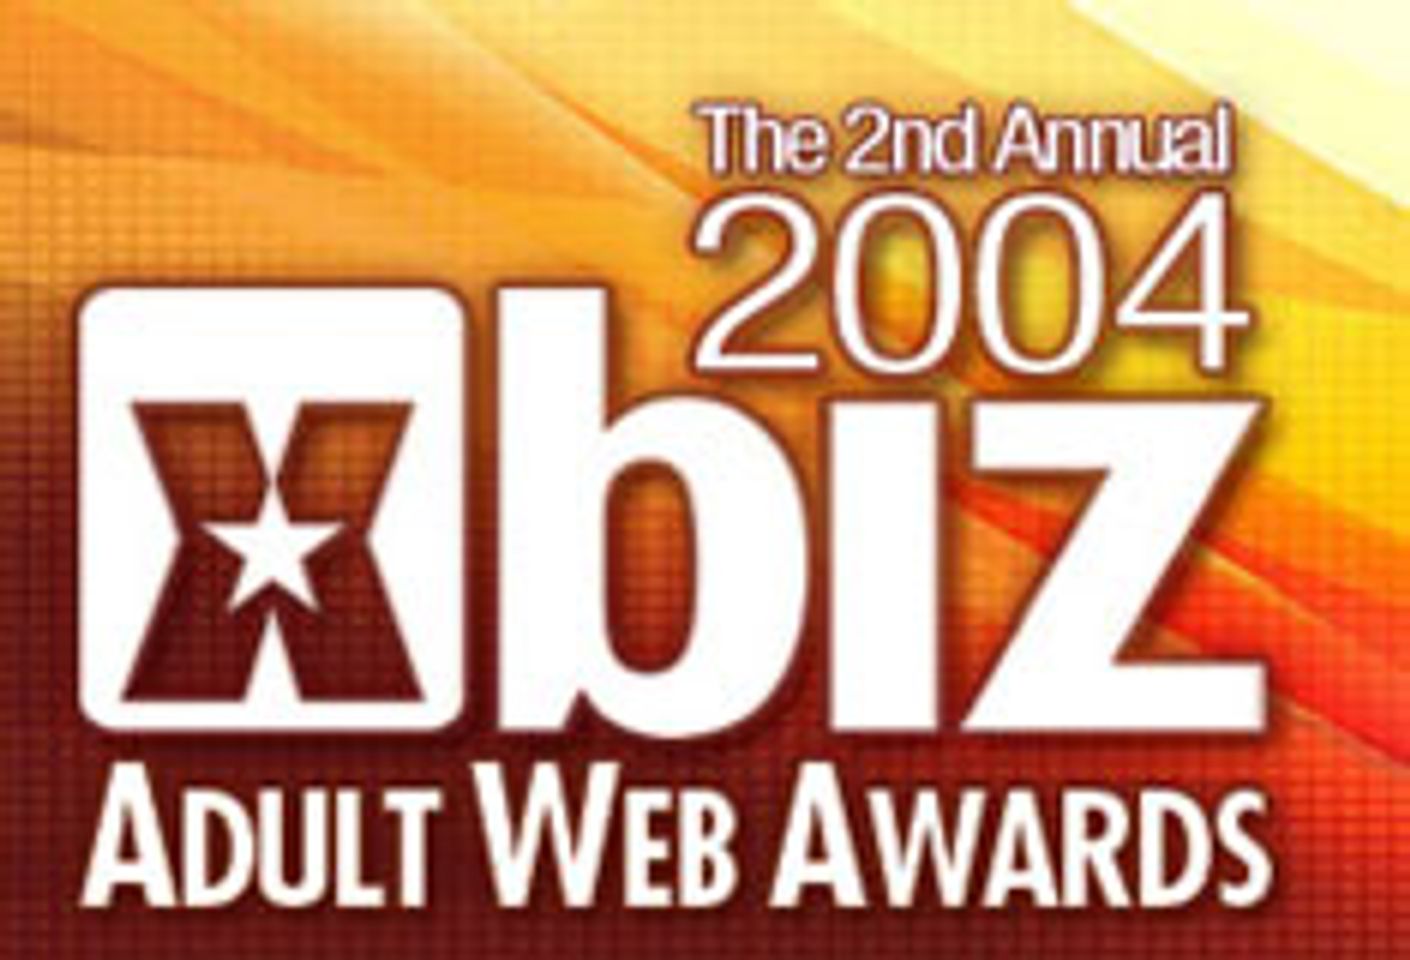 XBiz Adult Web Awards Taking Nominations